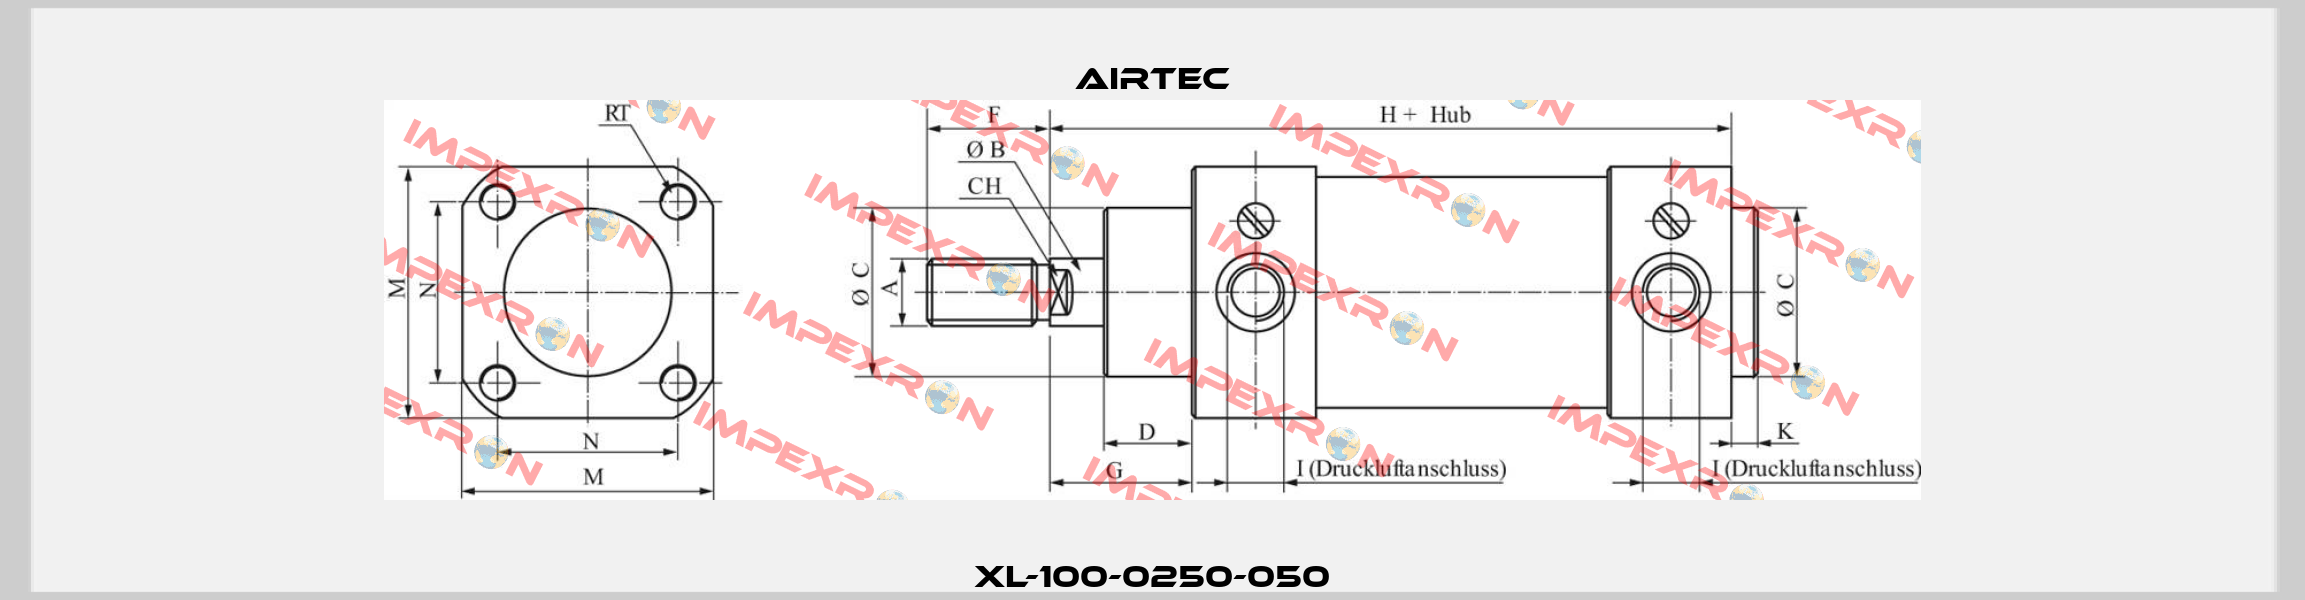 XL-100-0250-050 Airtec